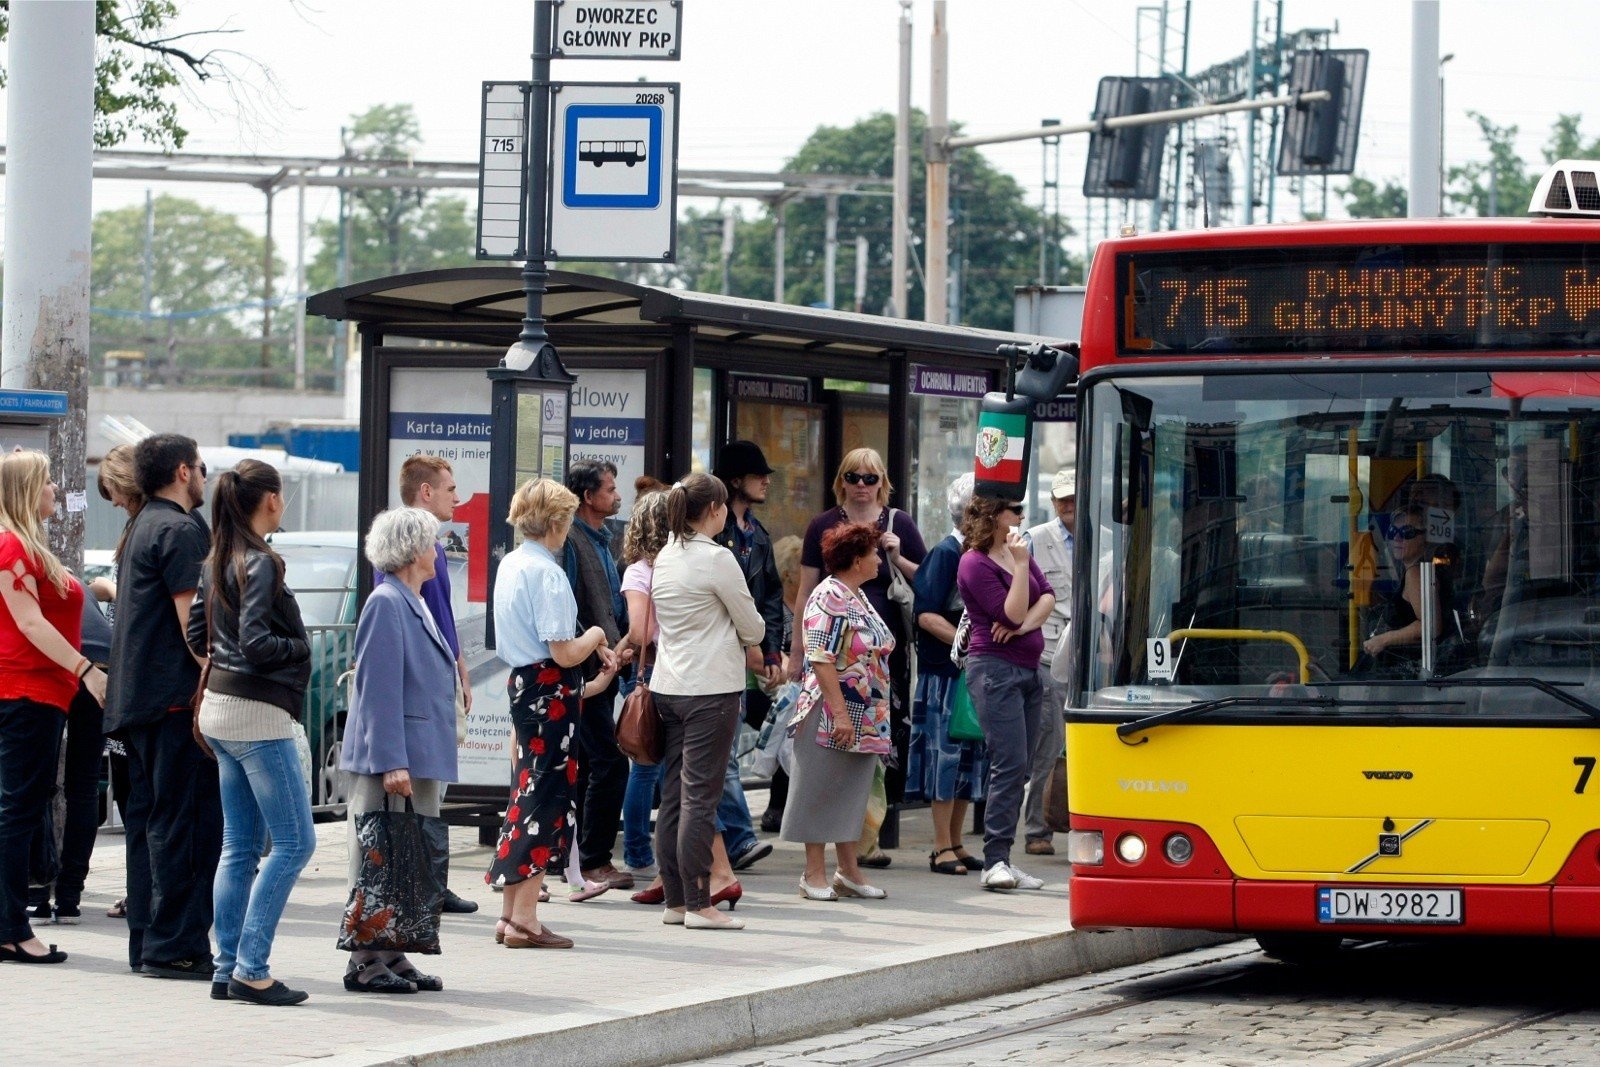 Likwidacja linii autobusowej 715. Co będzie zamiast? | Gazeta Wrocławska